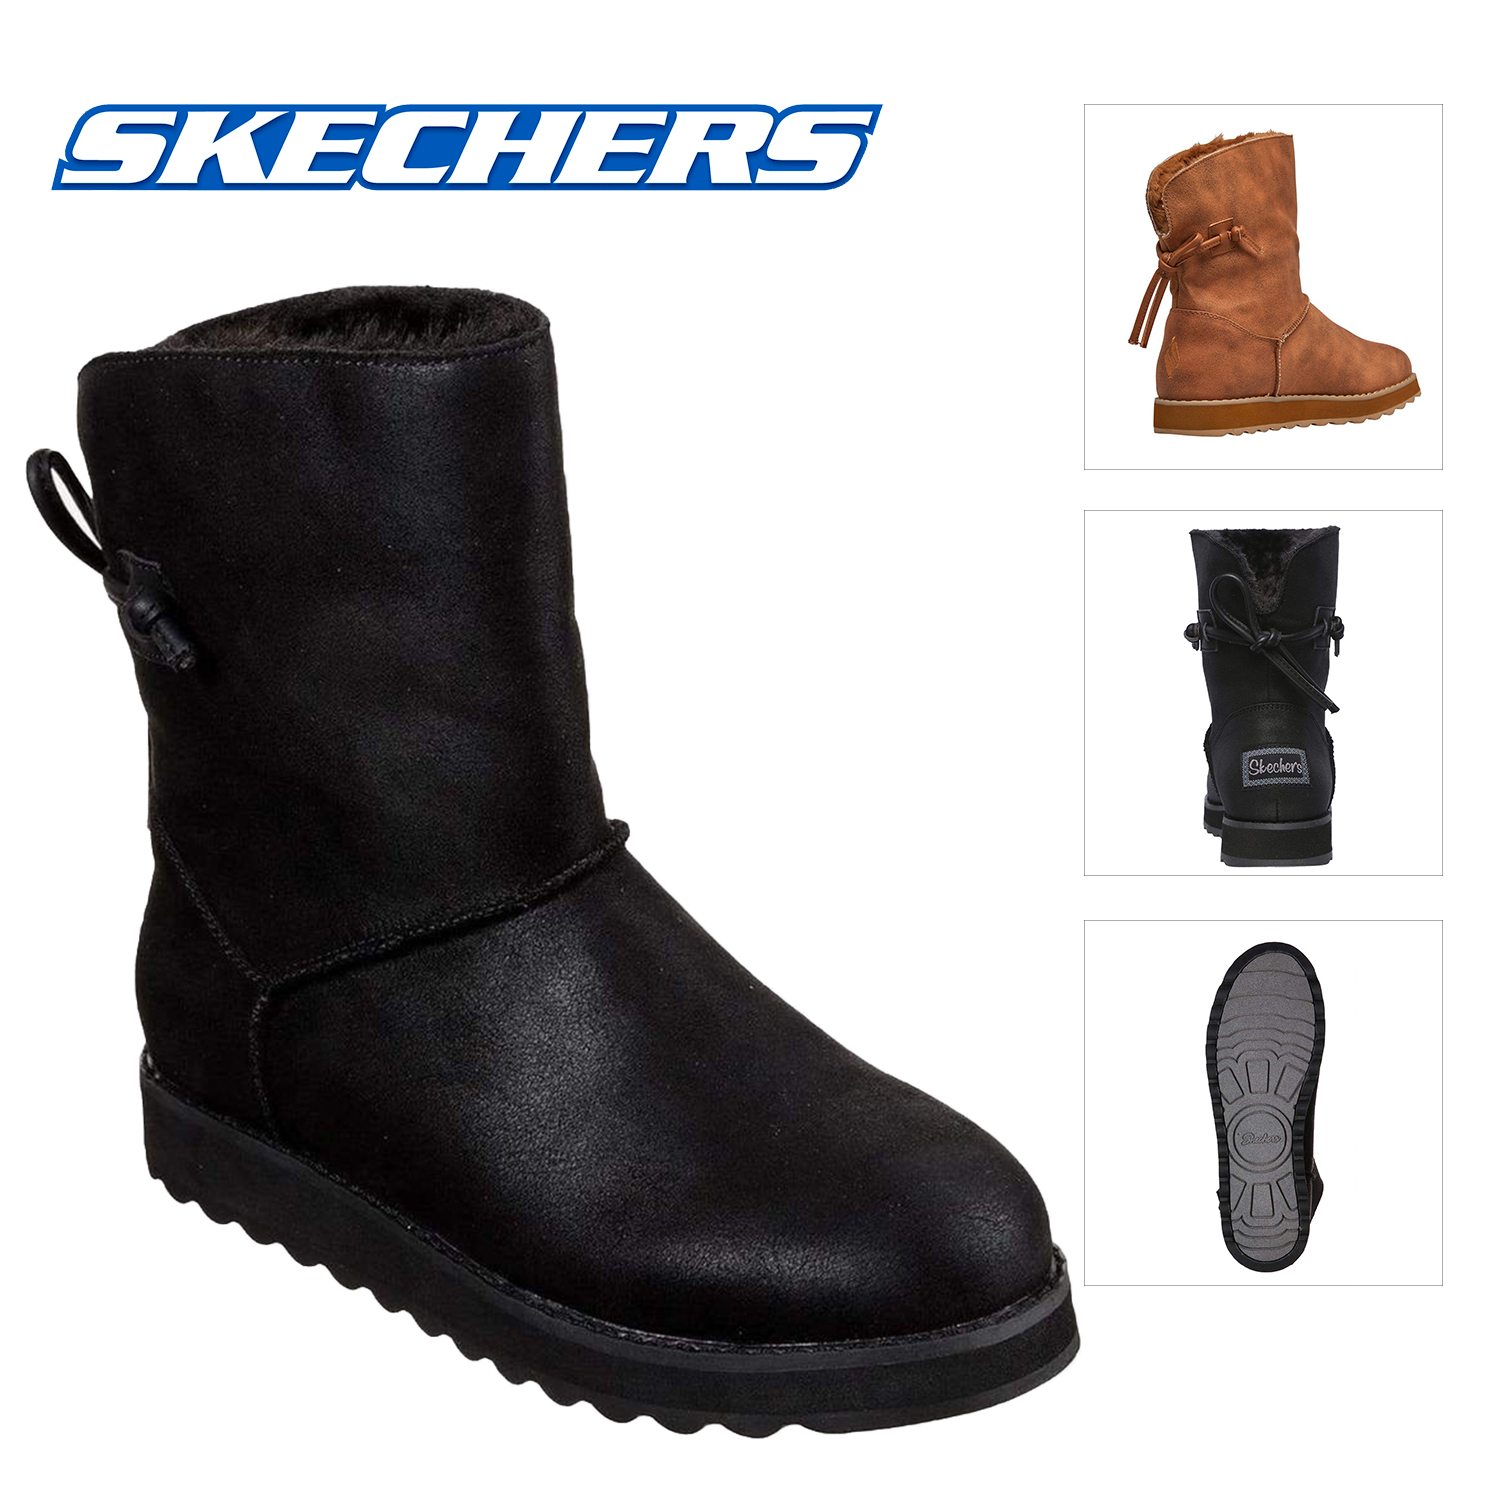 skechers women's keepsakes blur boots